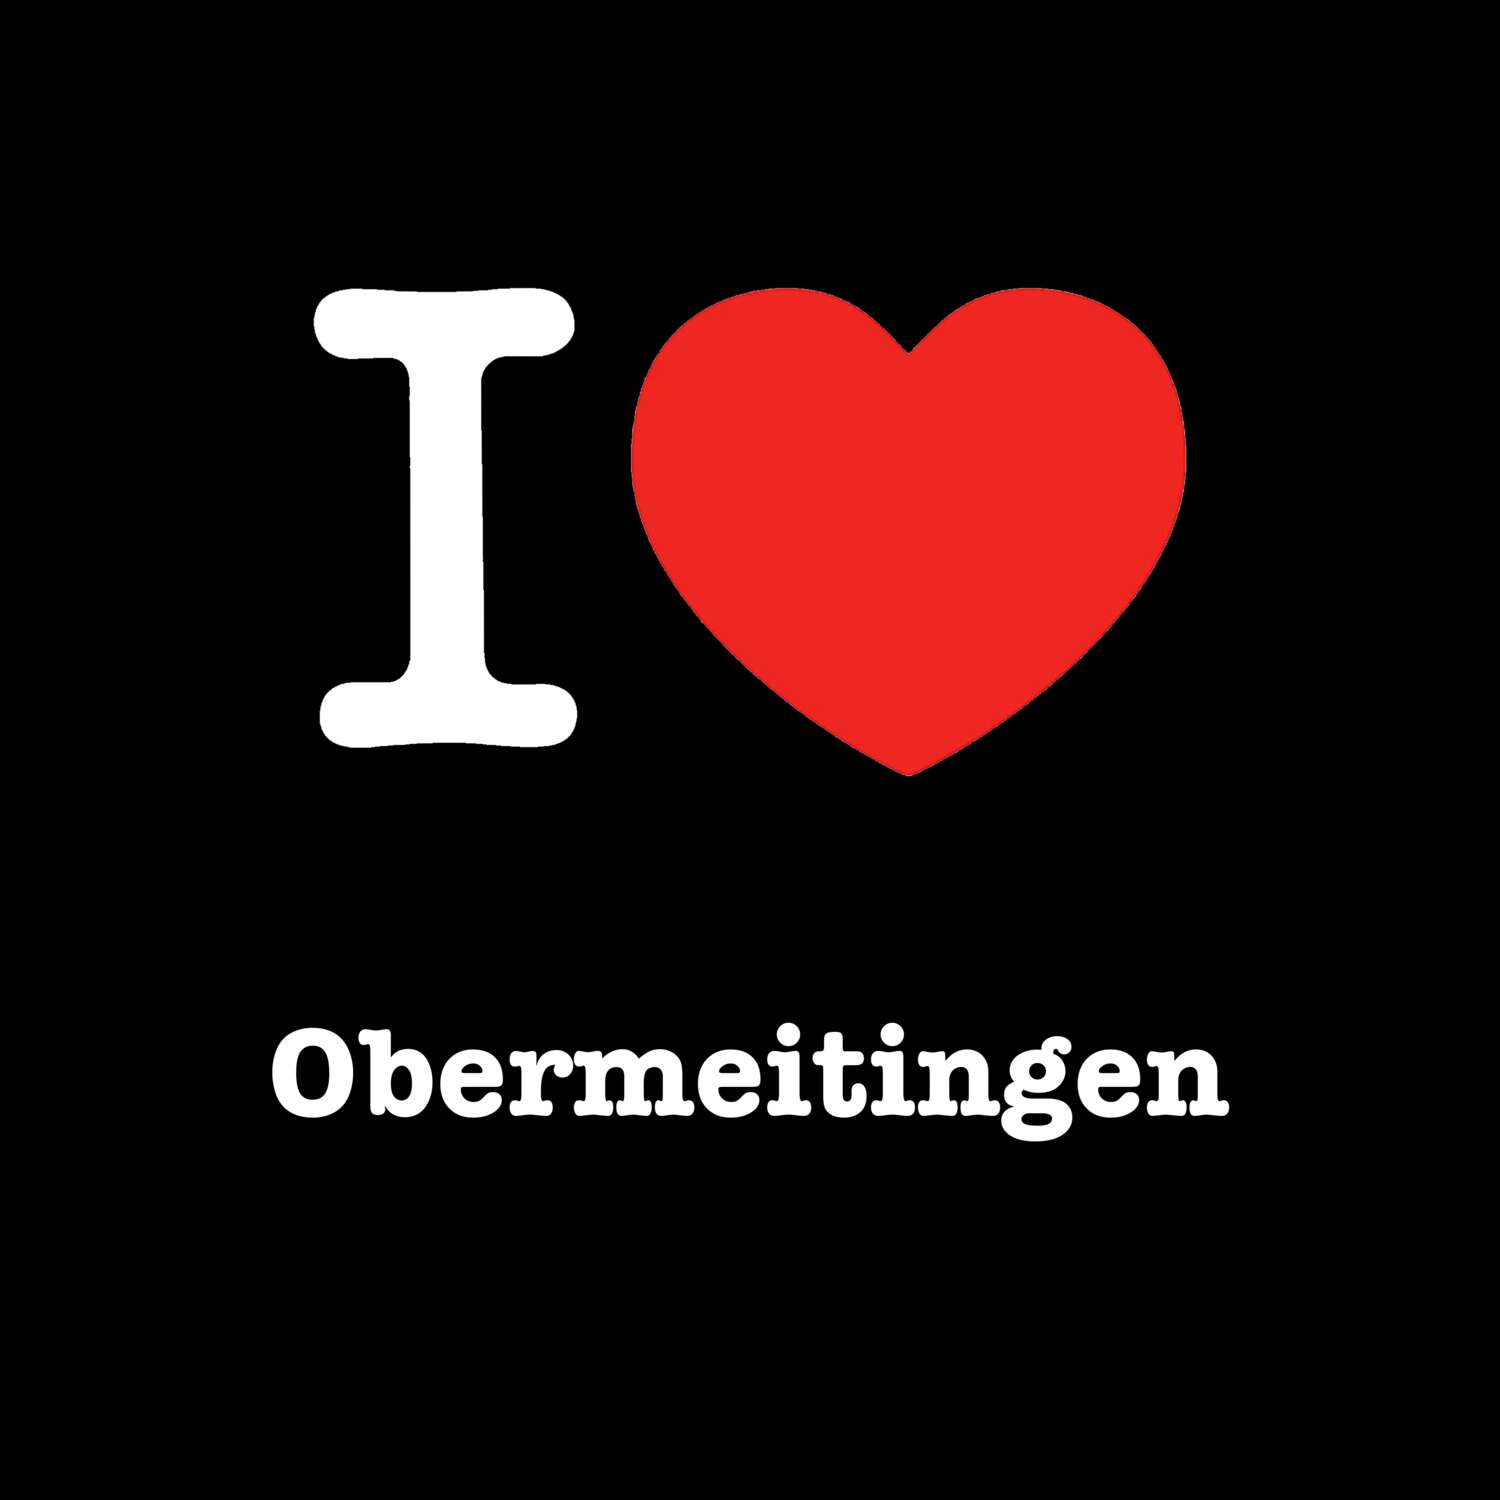 Obermeitingen T-Shirt »I love«